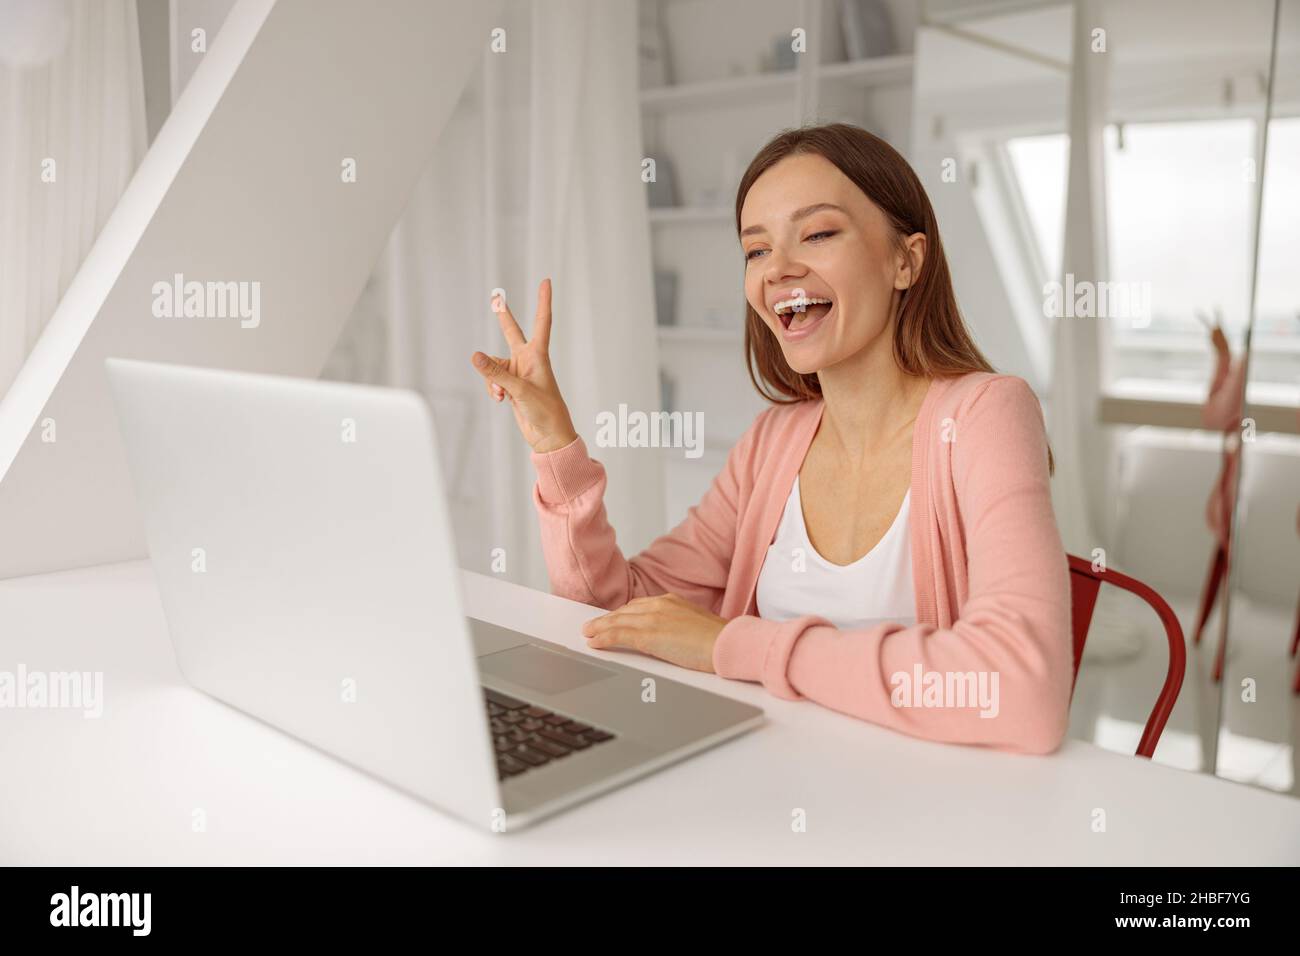 Lächelnde, hübsche Dame, die während eines Videoanrufs einen Laptop benutzt Stockfoto